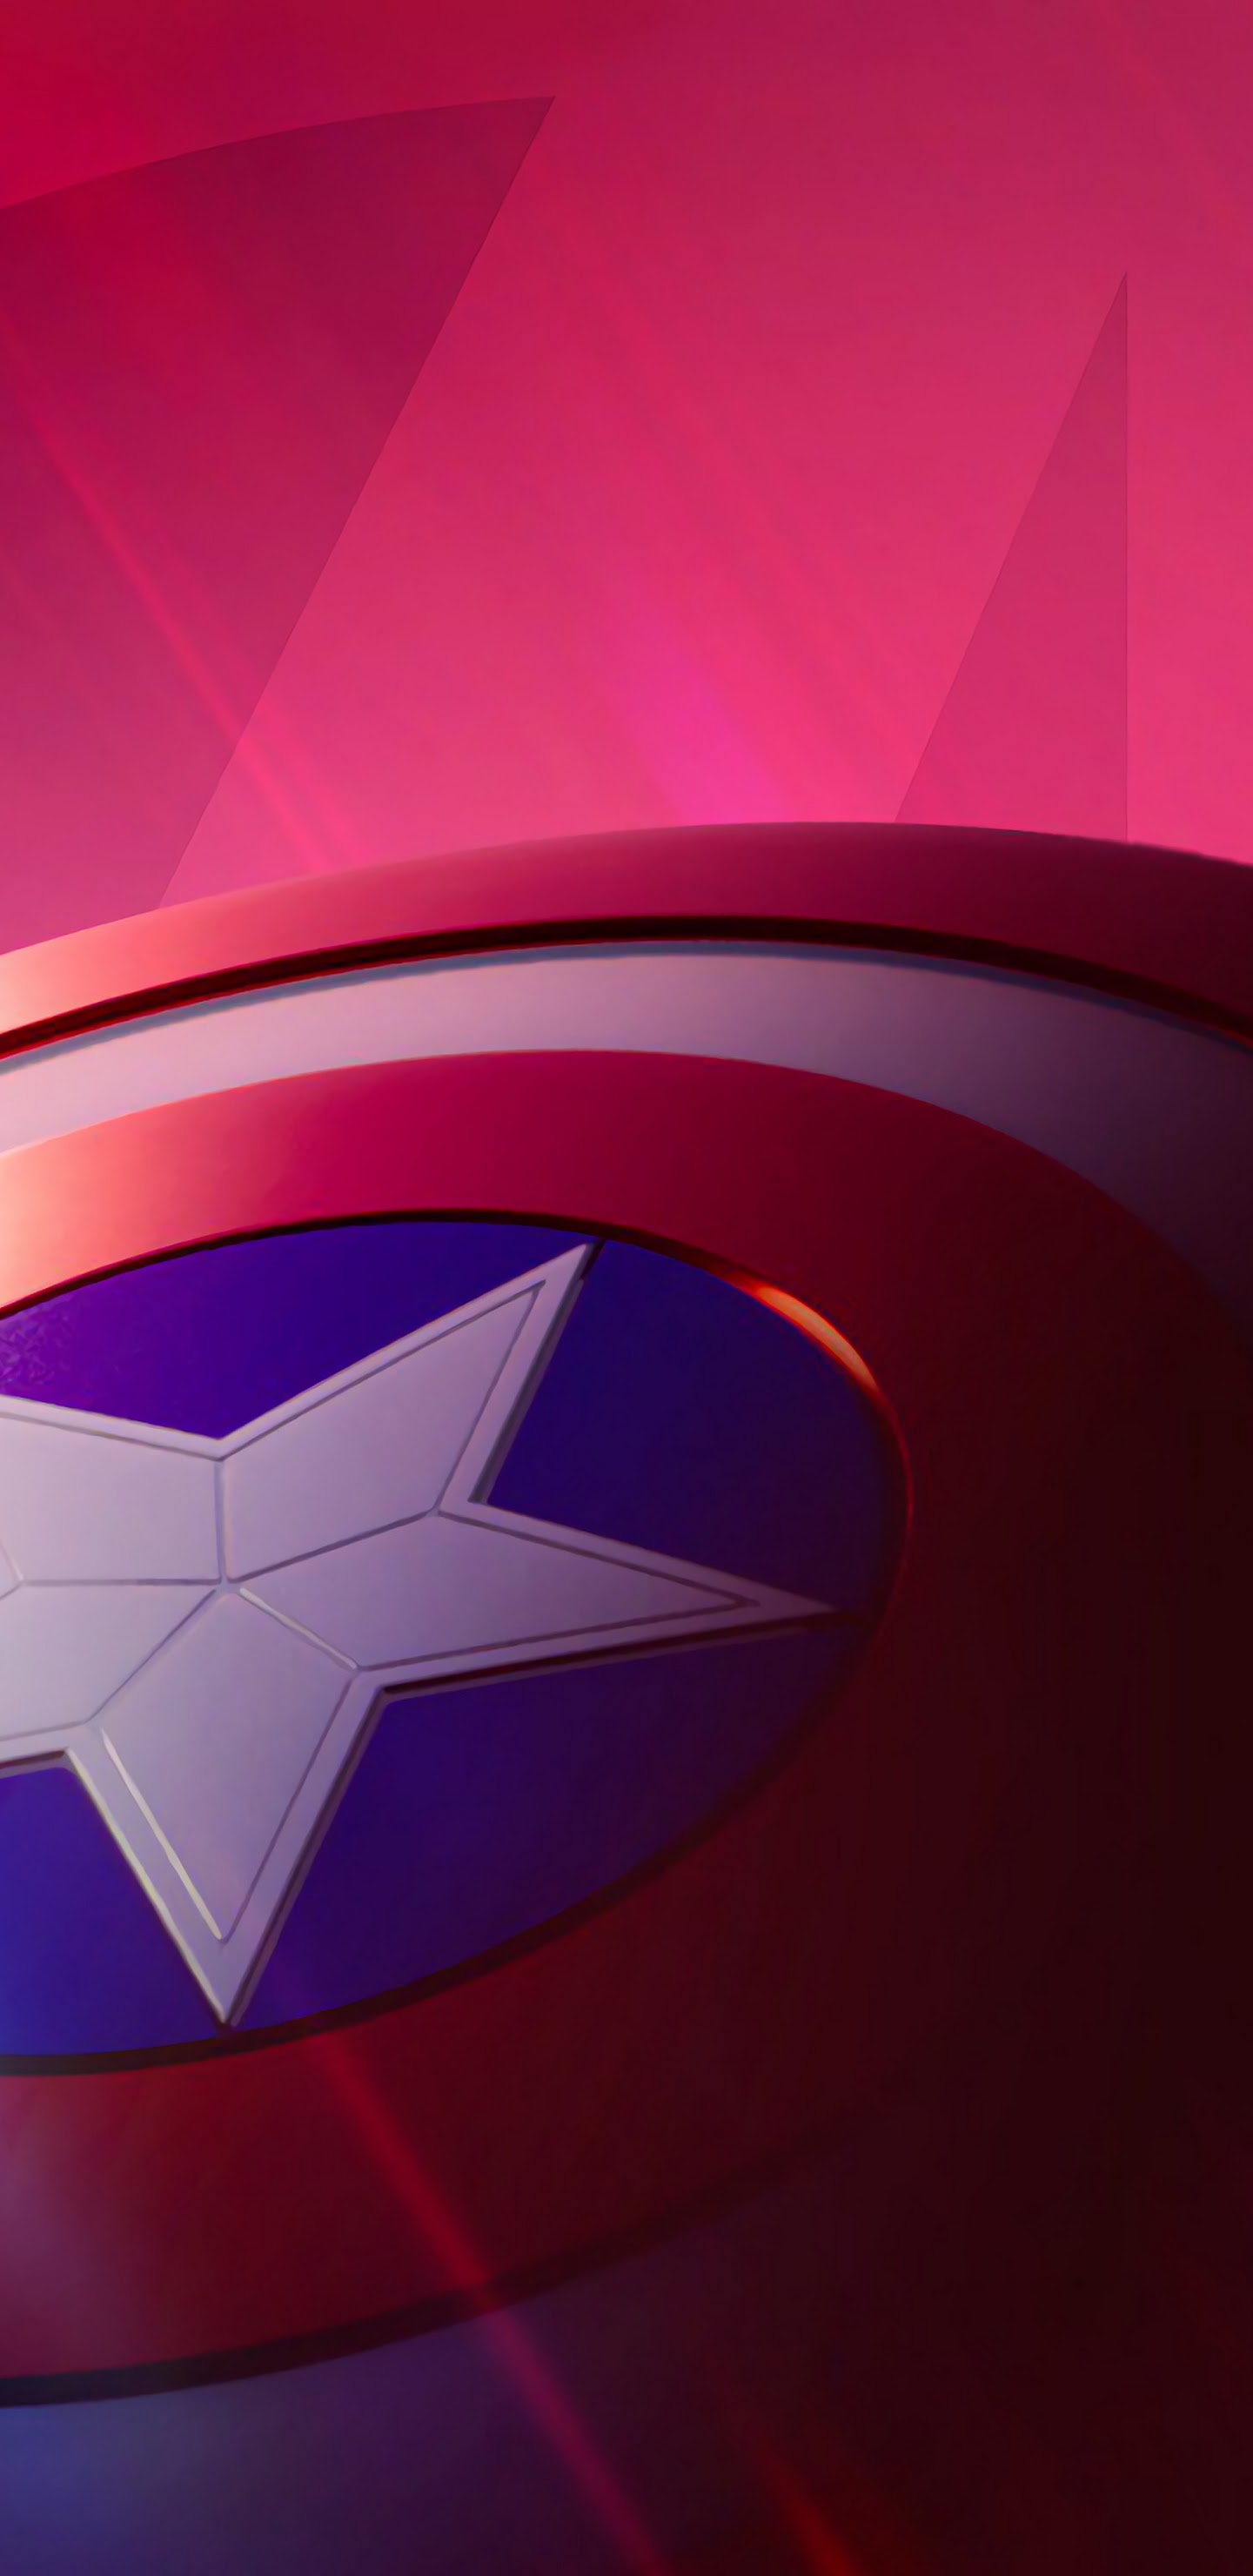 Fortnite X Avengers, Brite Bomber, Captain America - Brite Bomber Wallpaper  Captain America Shield - 1440x2960 Wallpaper 